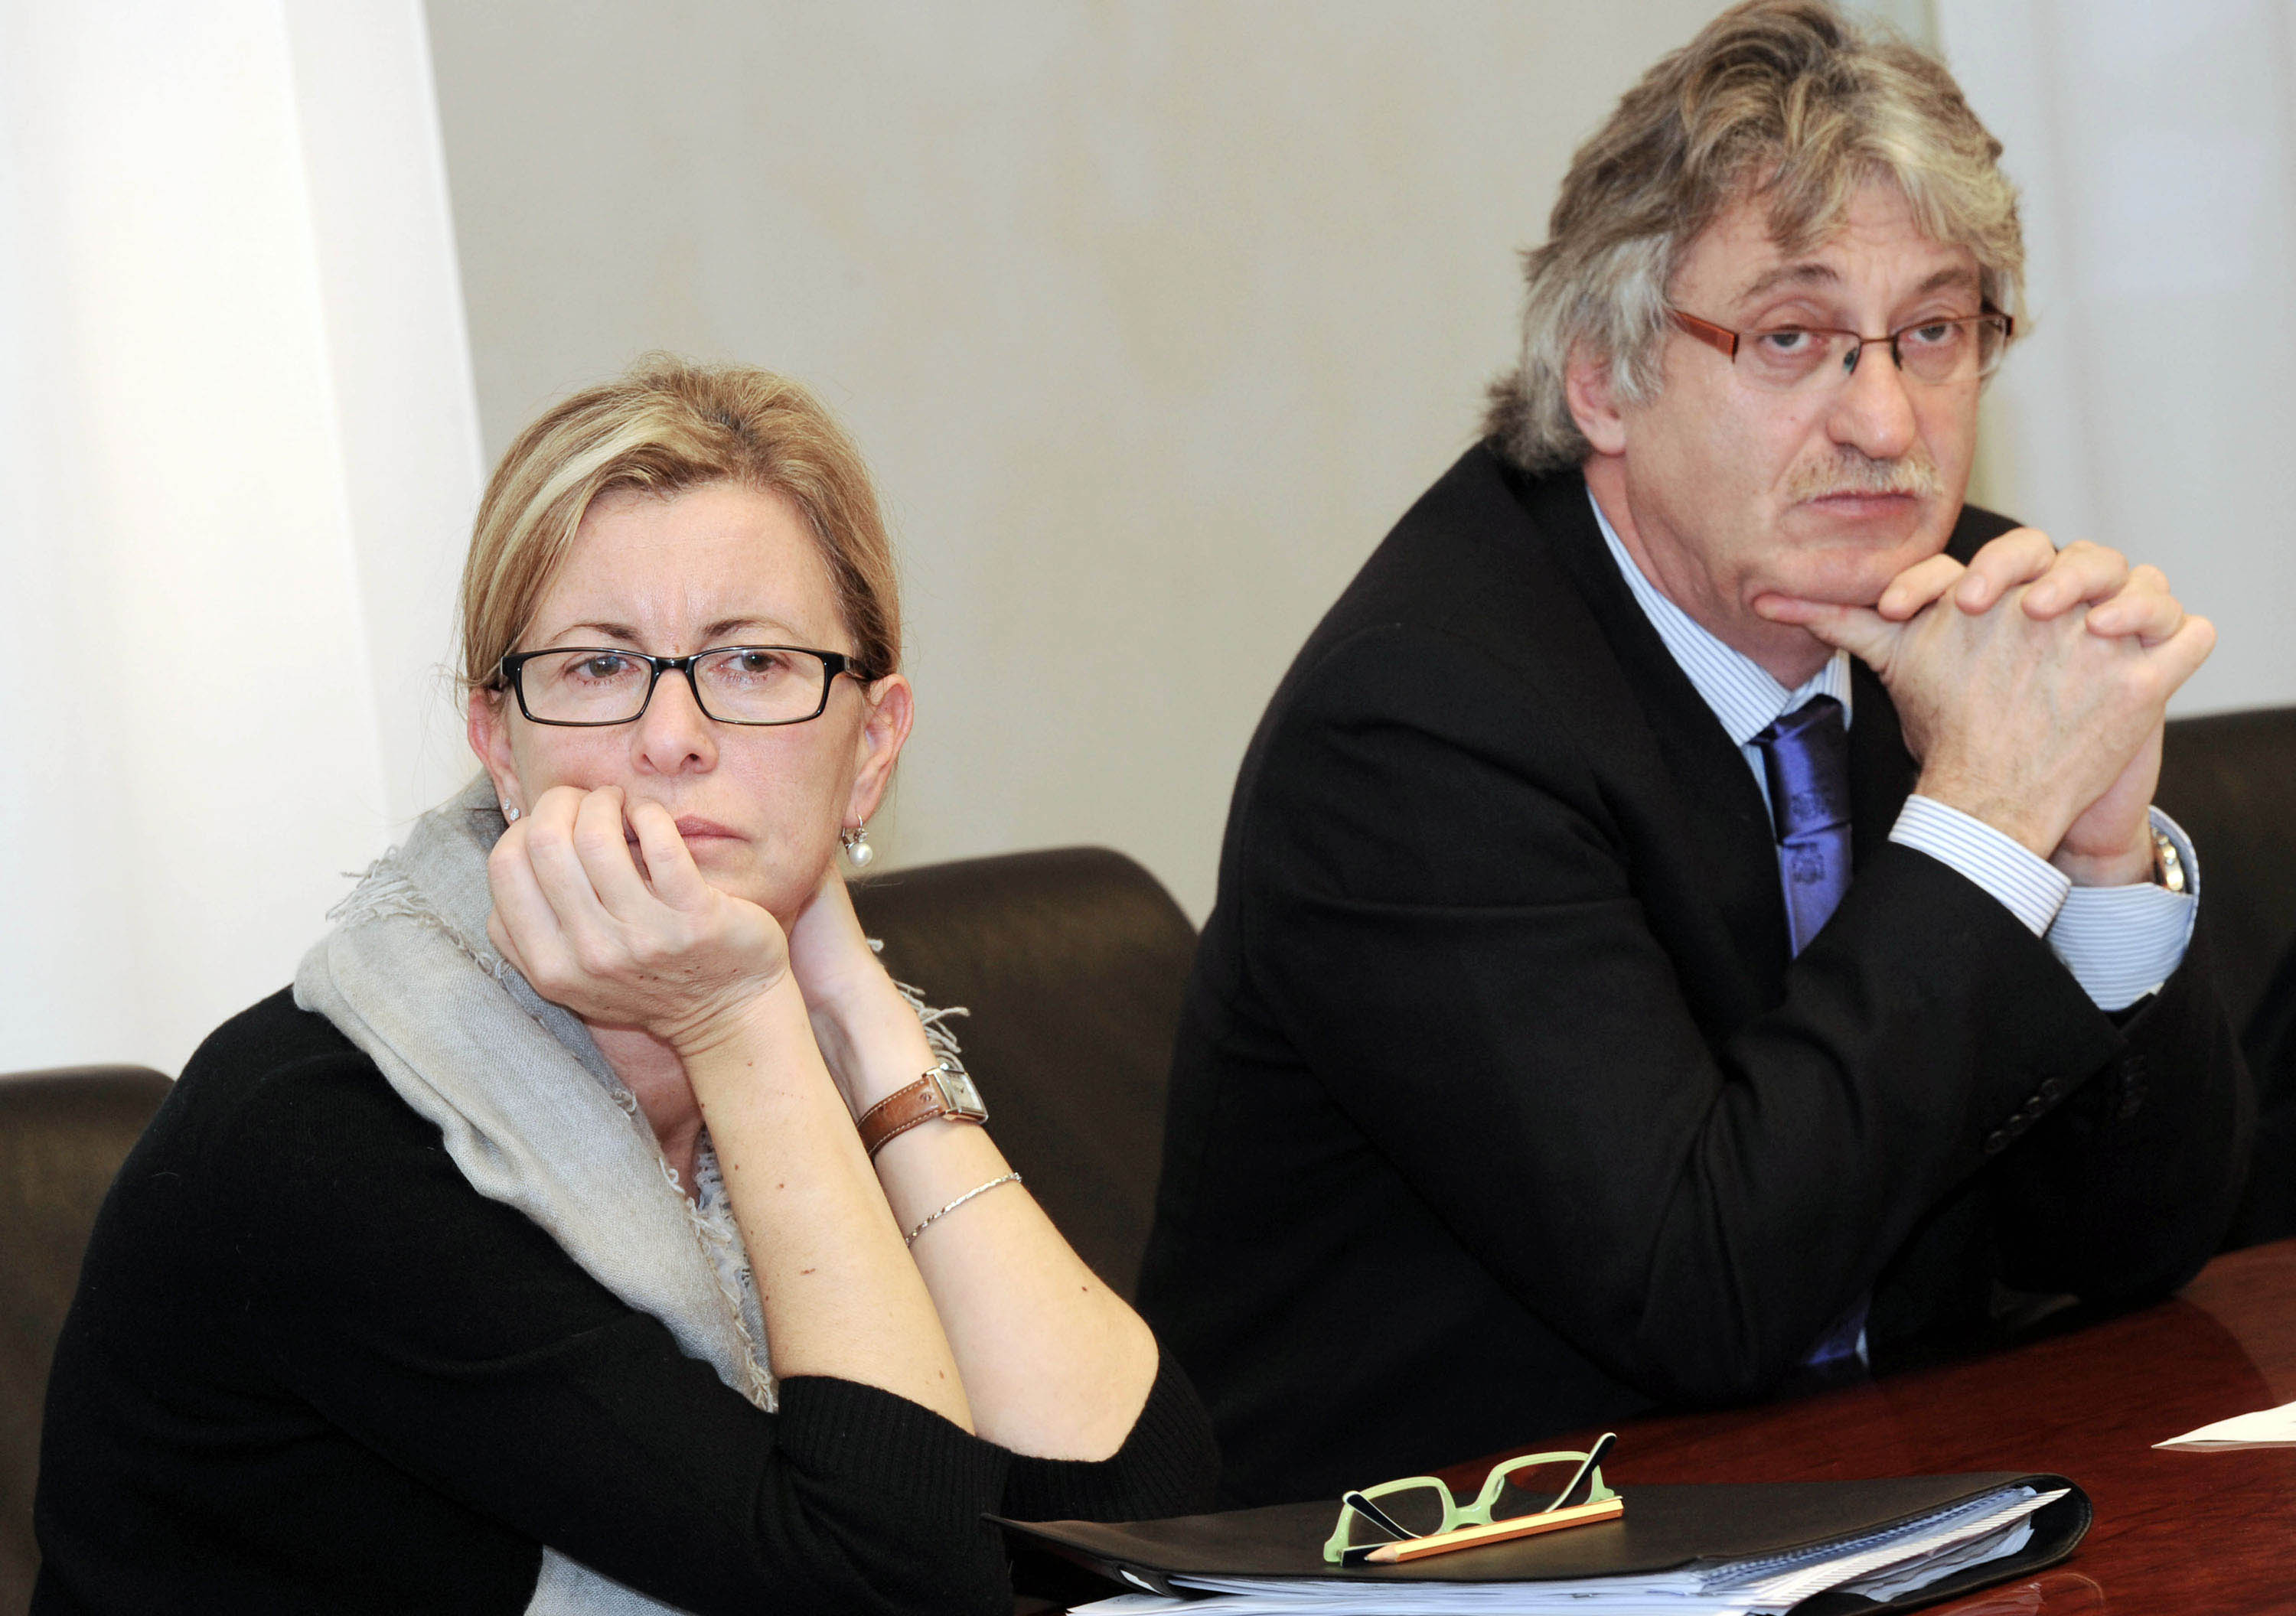 Sandra Savino (Assessore regionale Finanze) e Renzo Tondo (Presidente Friuli Venezia Giulia) in conferenza stampa sull'attribuzione del rating A+ di Standard &amp; Poor's alla Regione FVG. (Trieste 17/11/10)